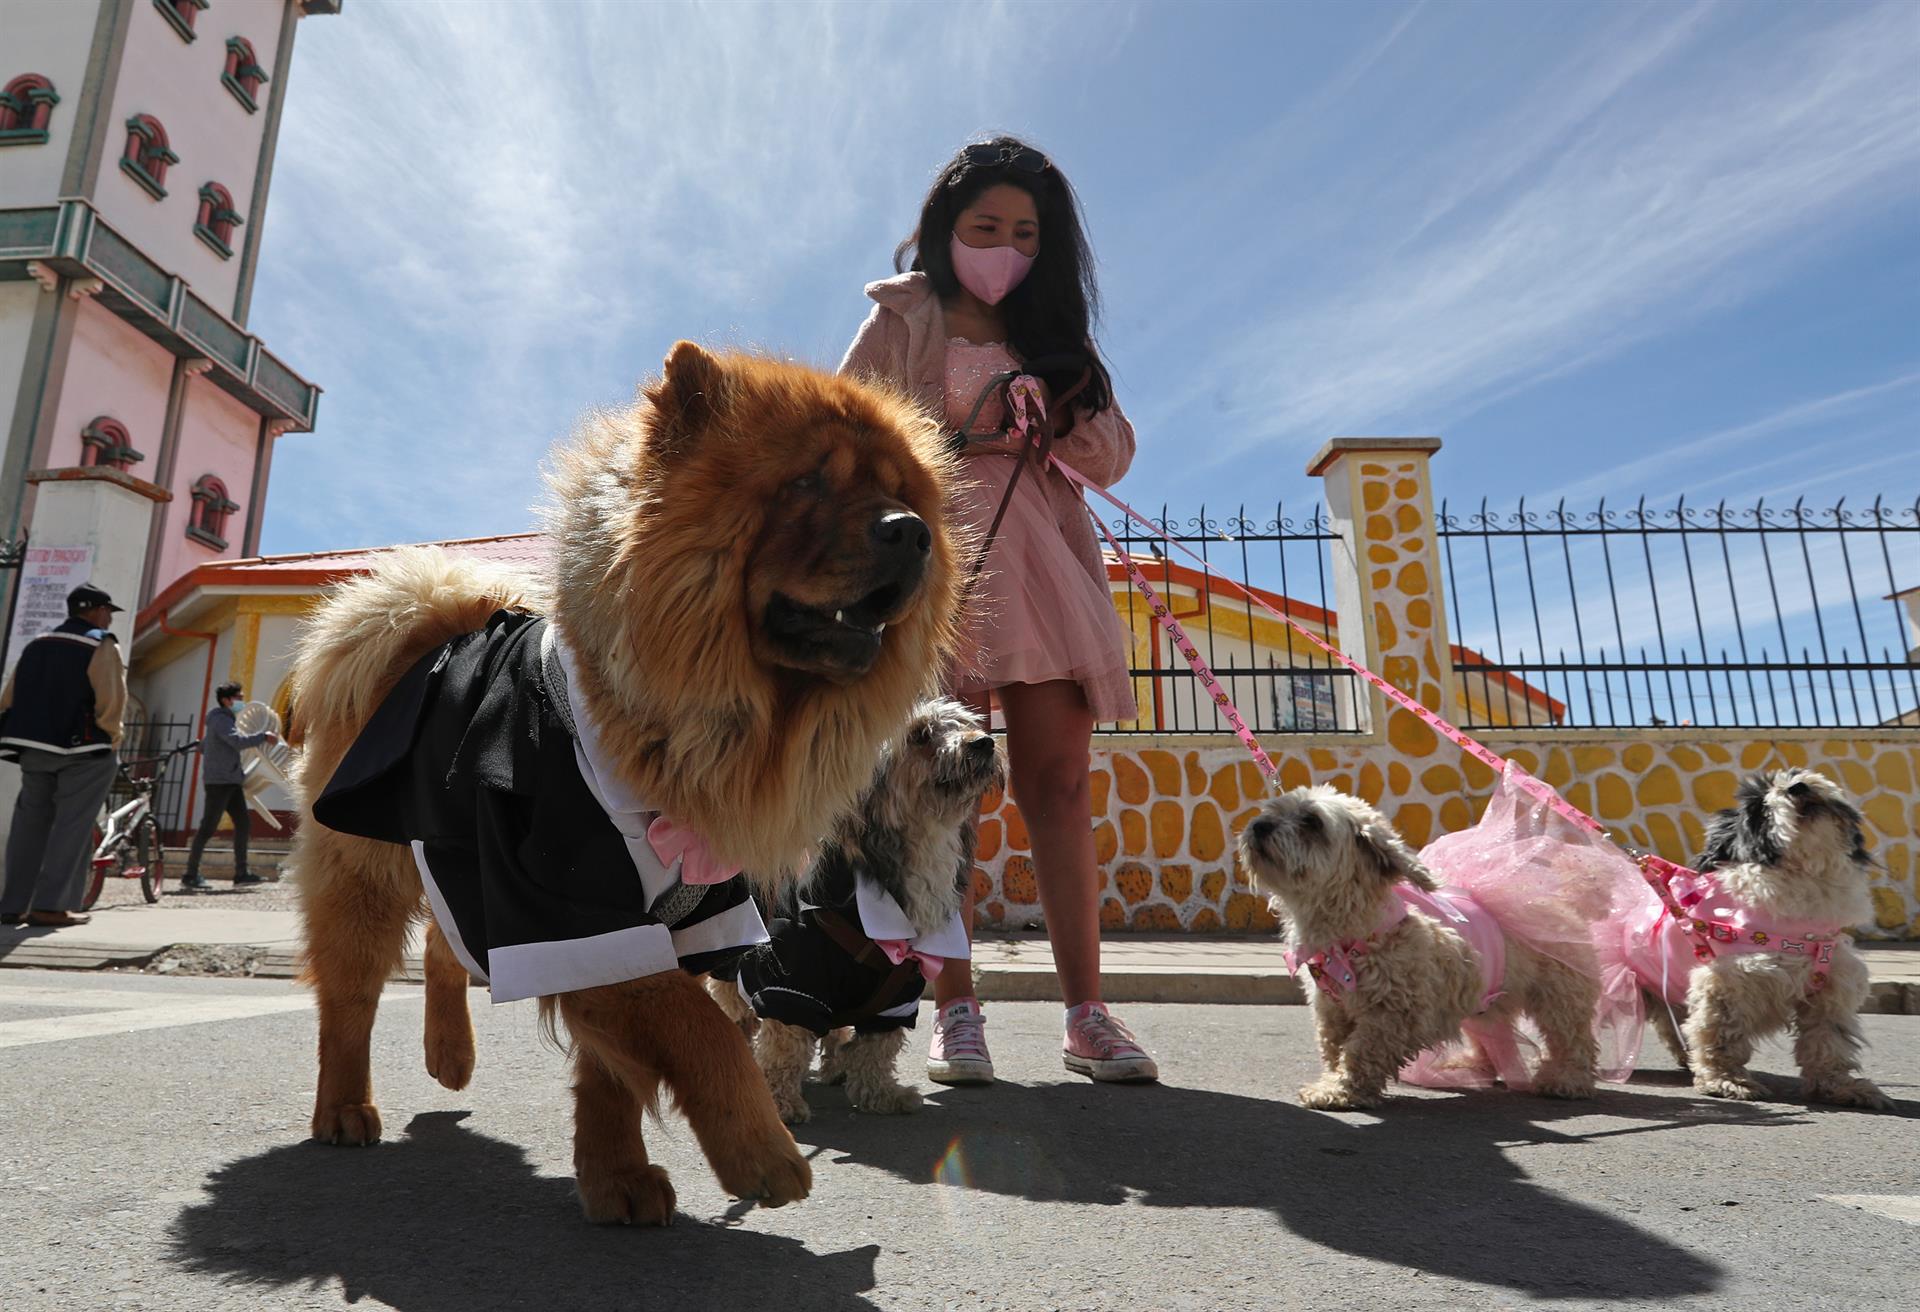 Una joven camina junto a sus dos mascotas en los alrededores de la parroquia de su barrio.